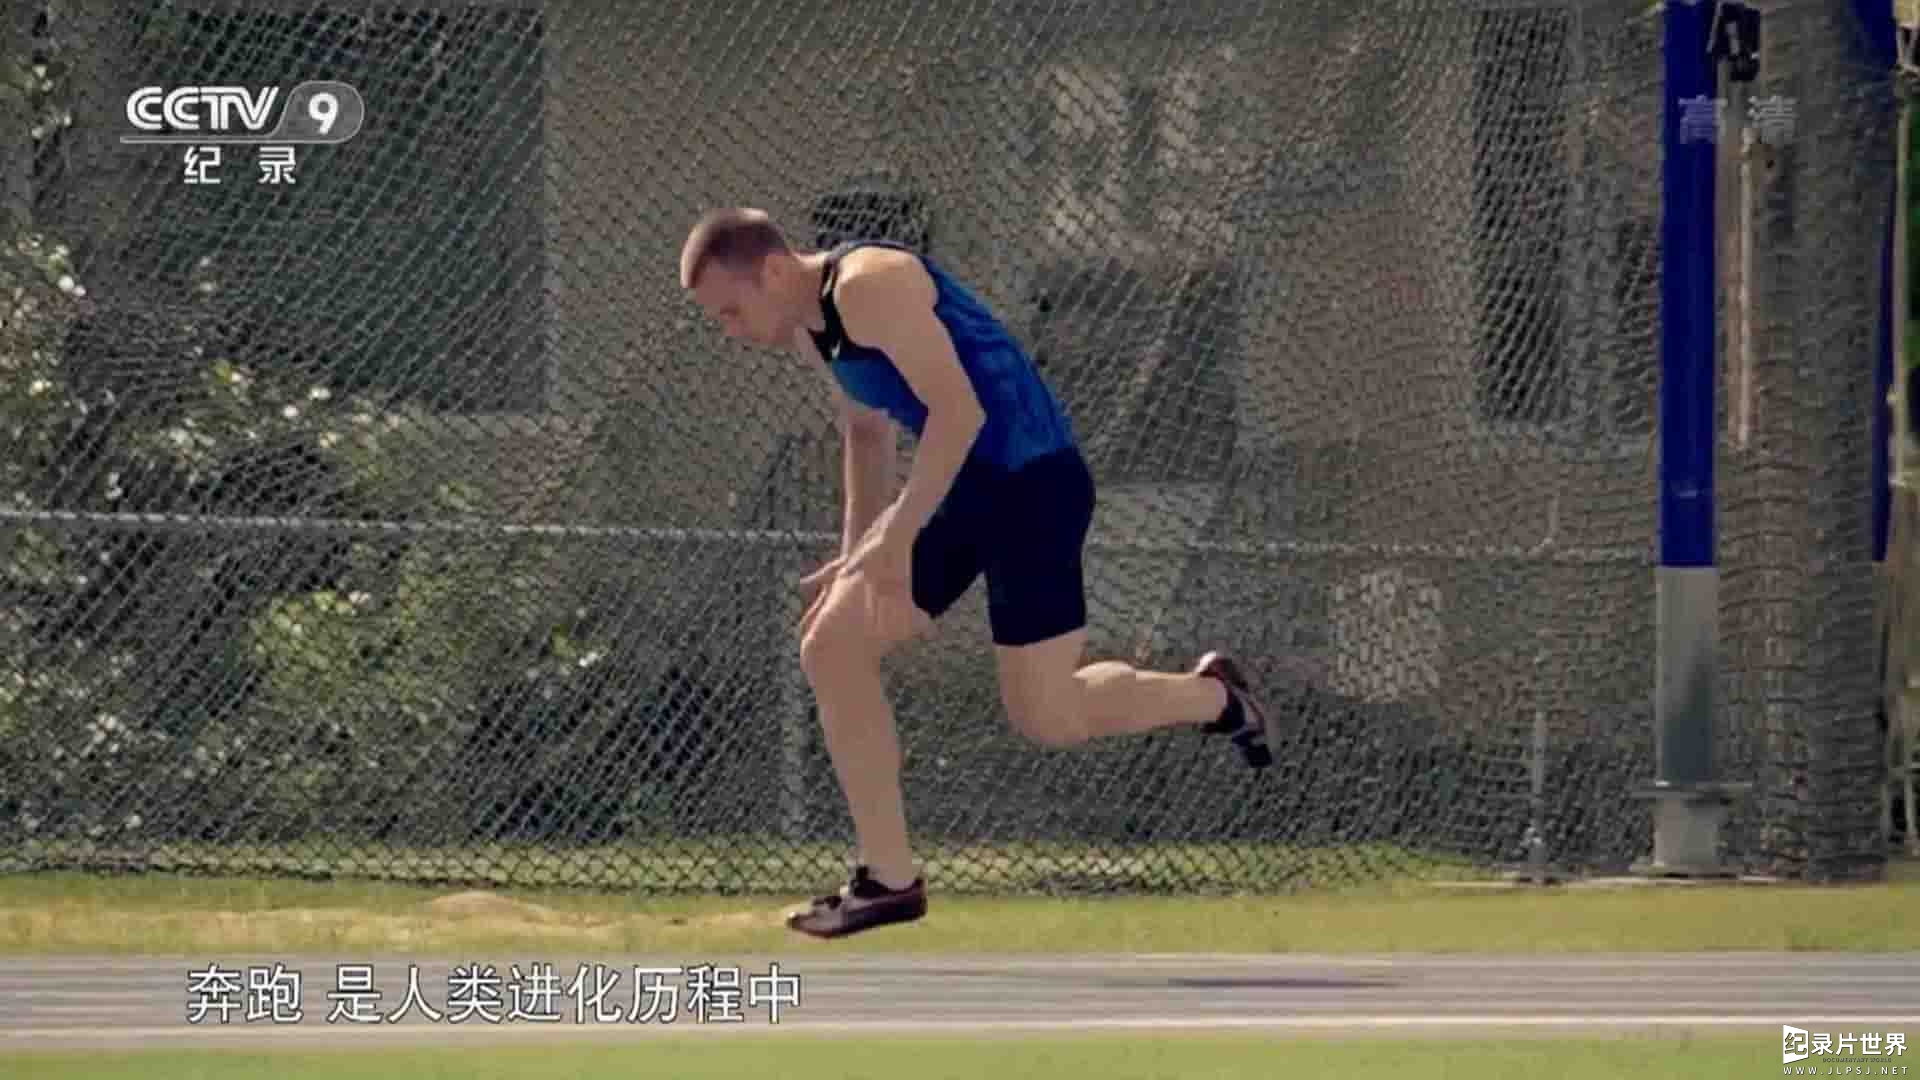 央视纪录片《人类 天生完美的奔跑者 The Perfect Runner 2018》全1集 